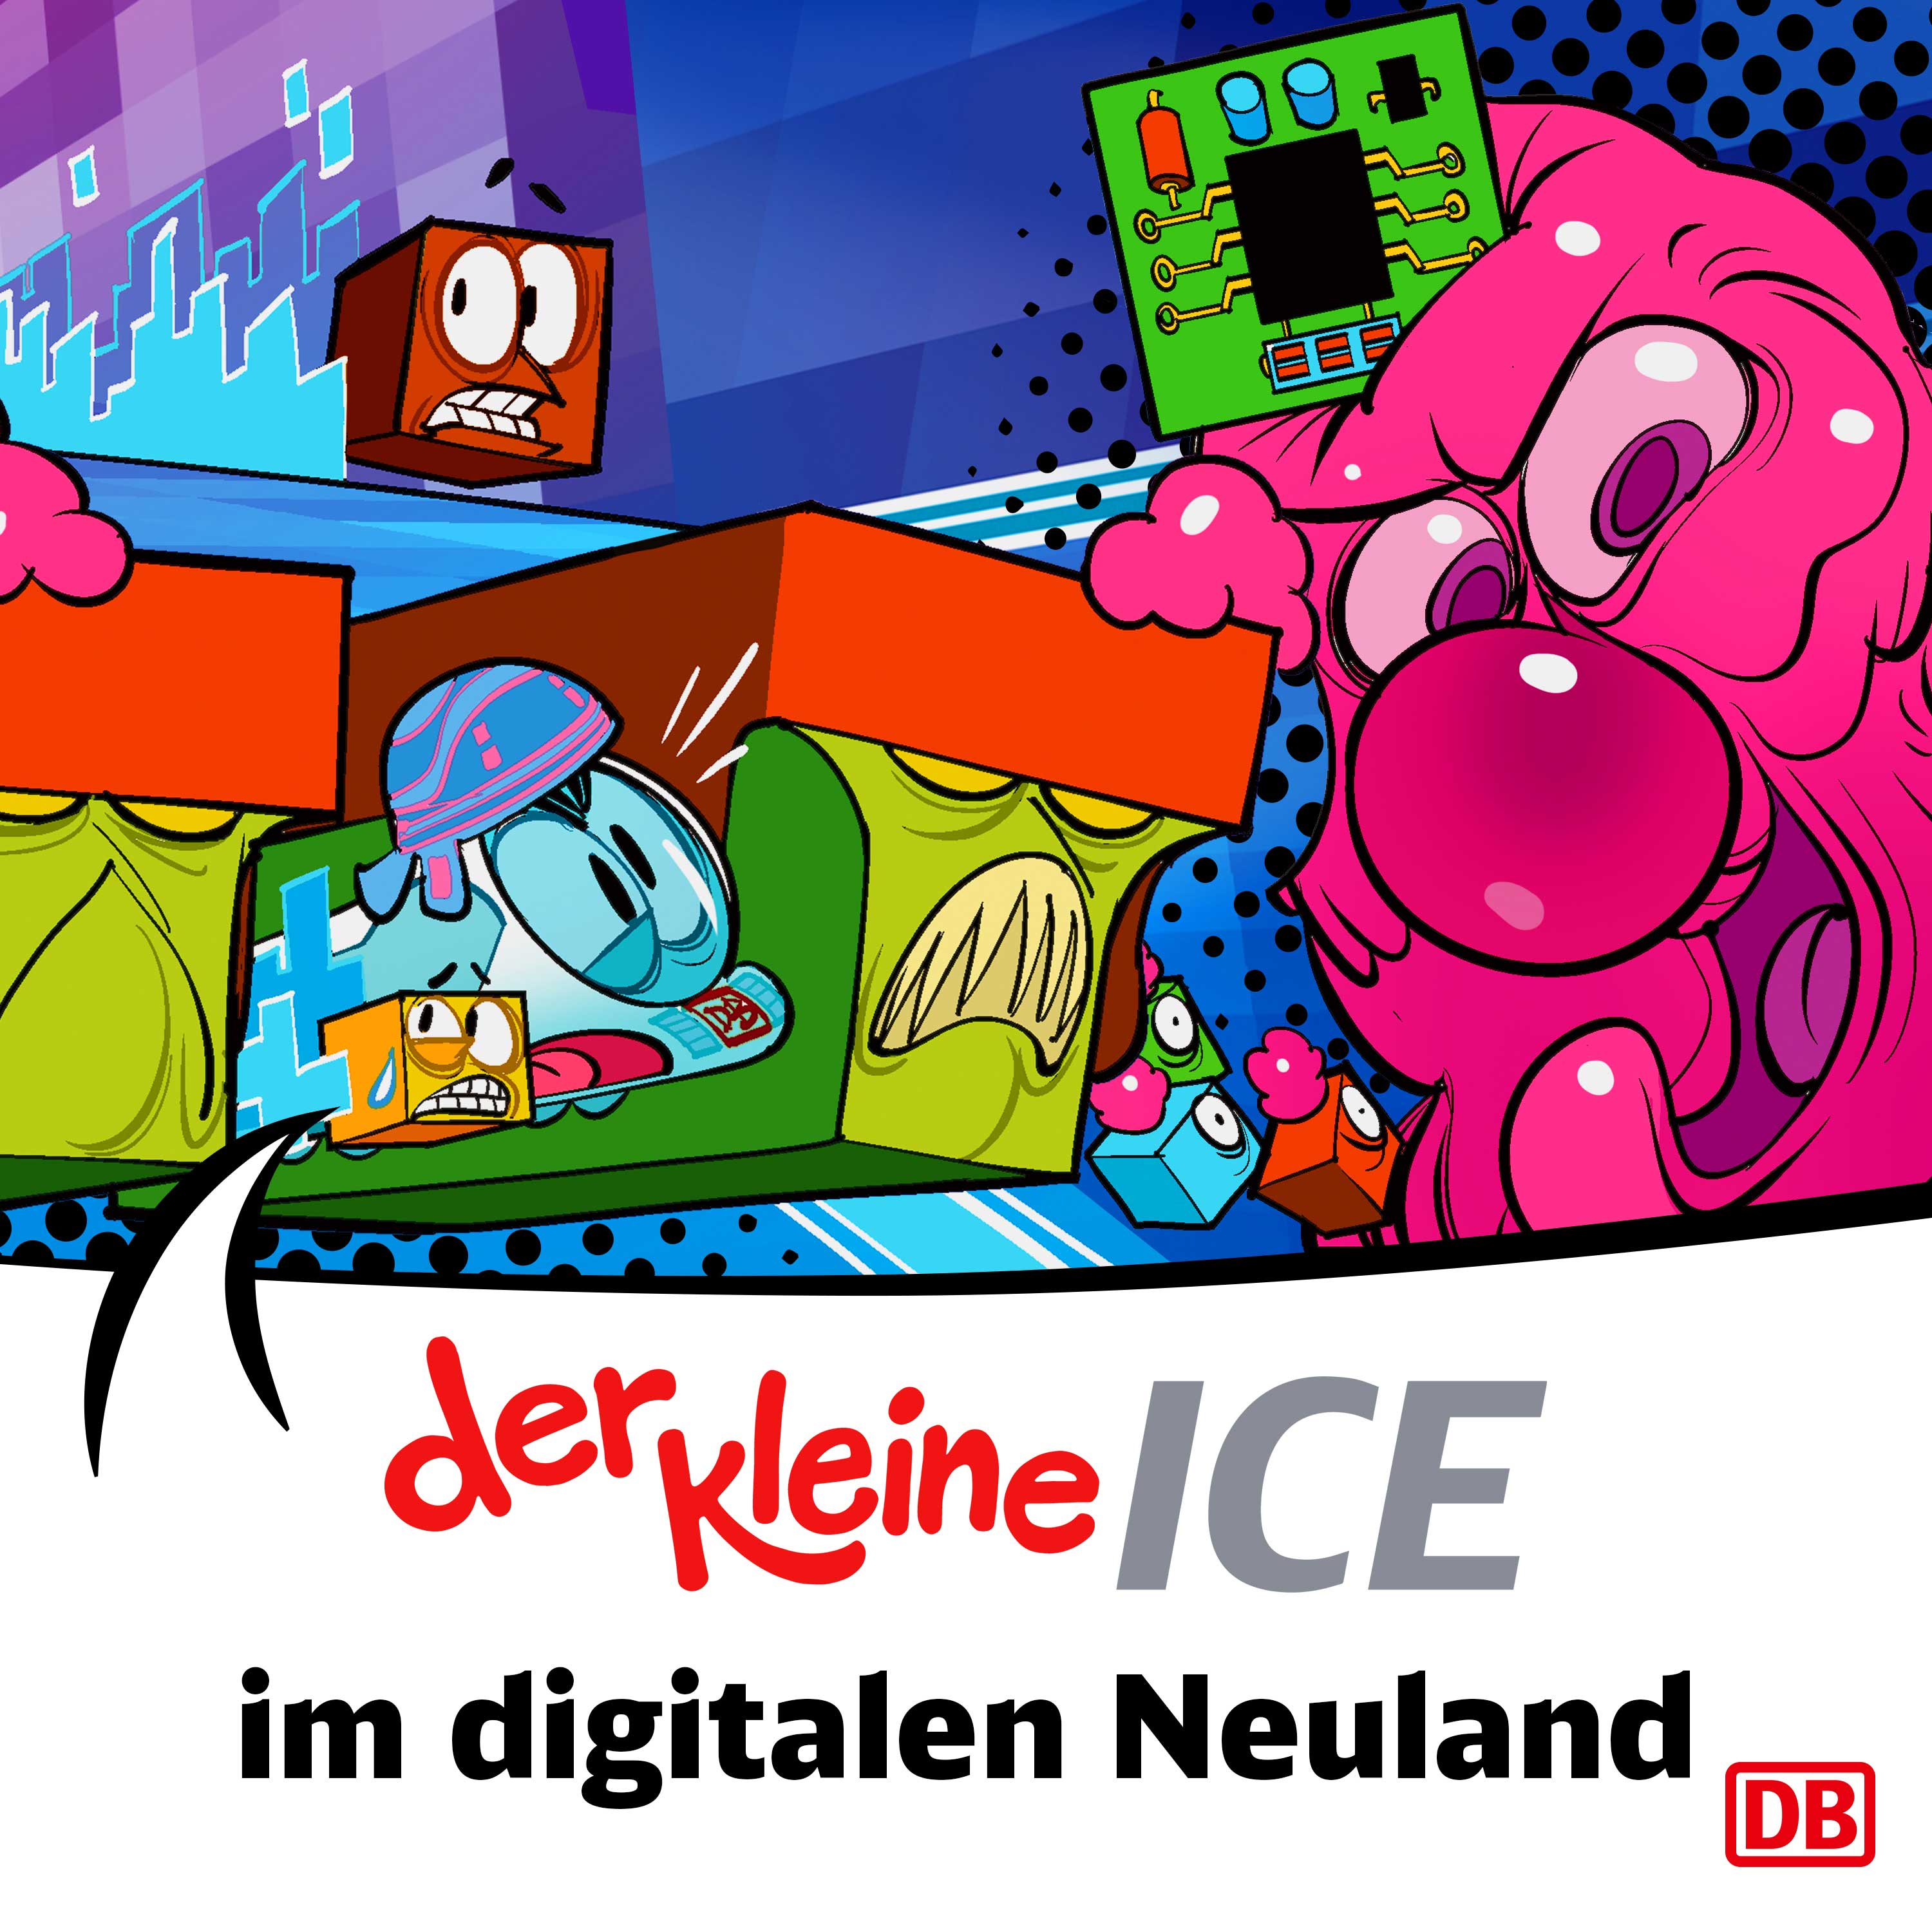 Der kleine ICE - Im digitalen Neuland